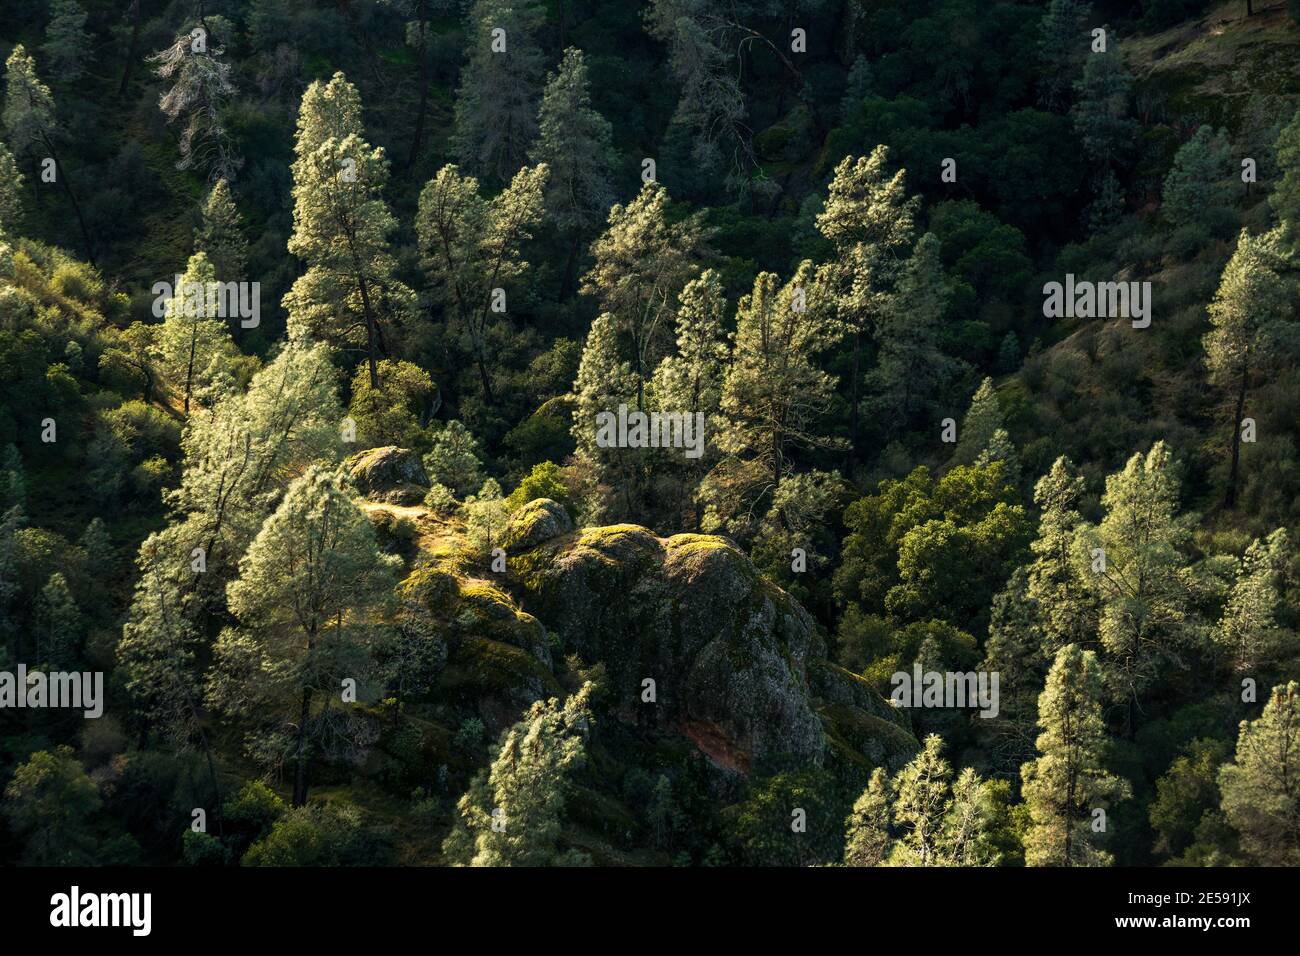 Endemico della California, il Gredy Pine (Pinus sabiniana) cresce tra le formazioni rocciose del Pinnacles National Park se di Salinas. Foto Stock